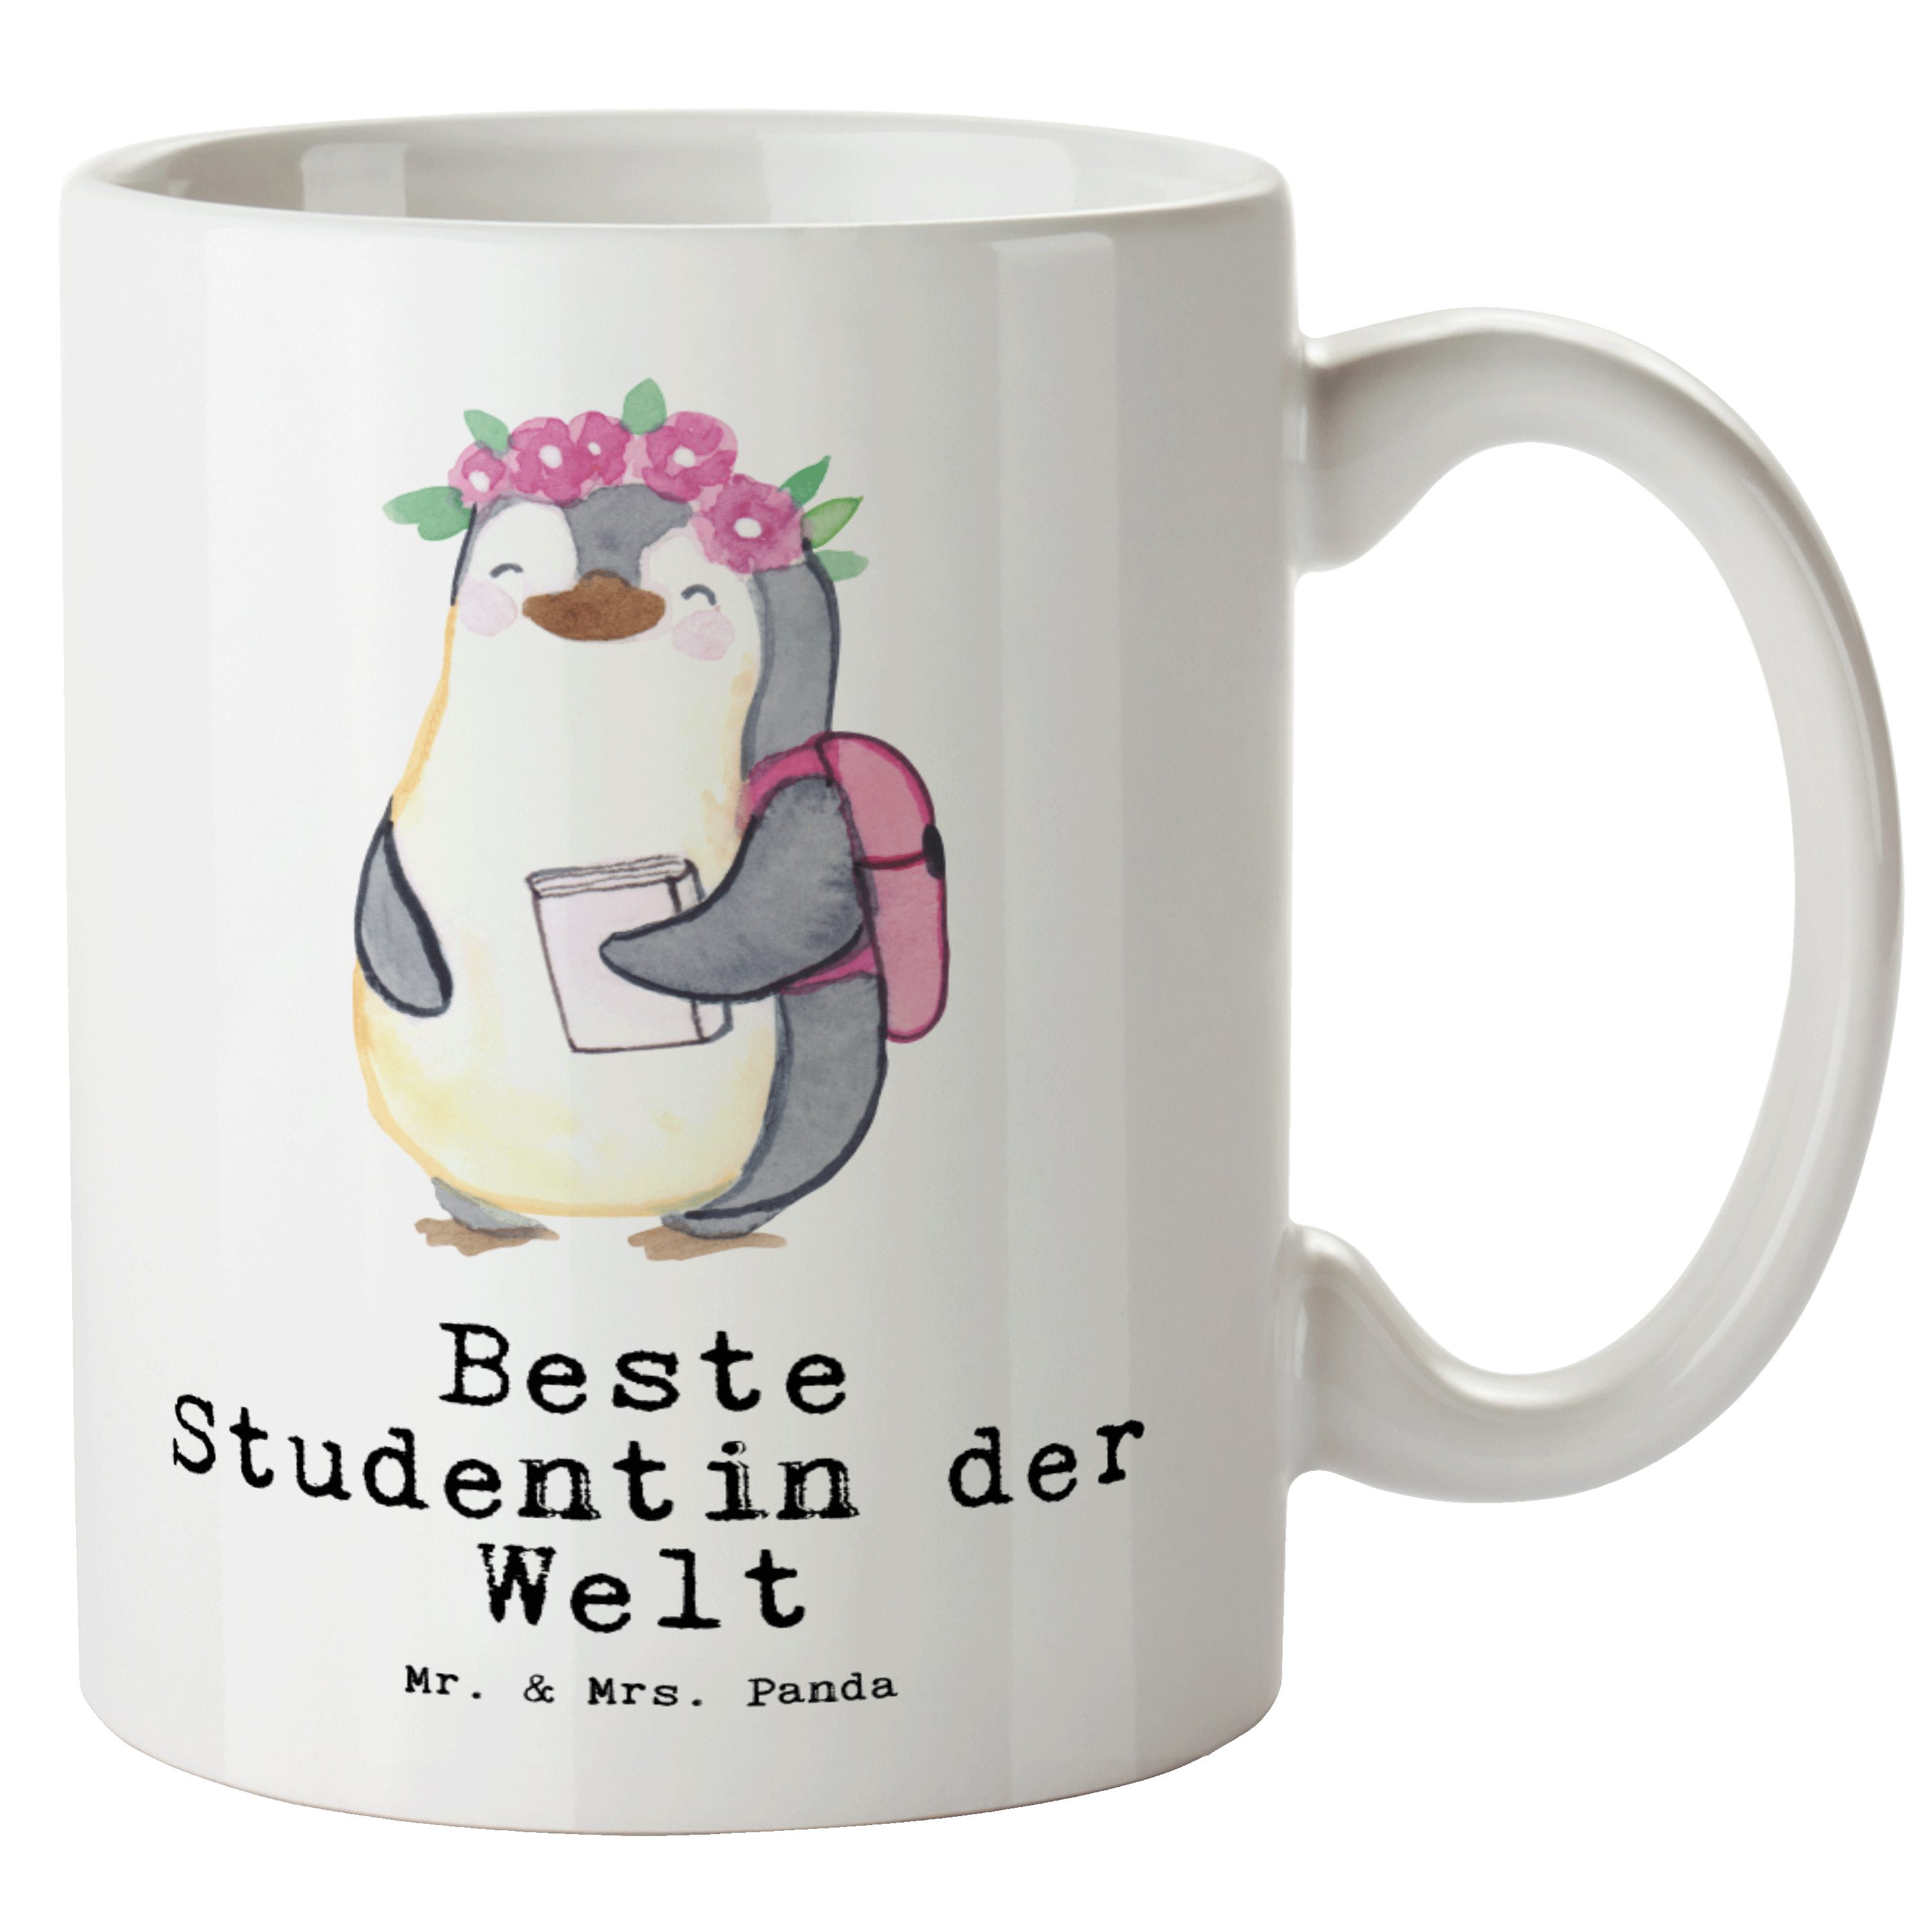 Mr. & Mrs. der Keramik Bedanken, Beste Tasse Pinguin Geschenk, - Weiß - Panda Studentin Tasse XL lustig, Welt